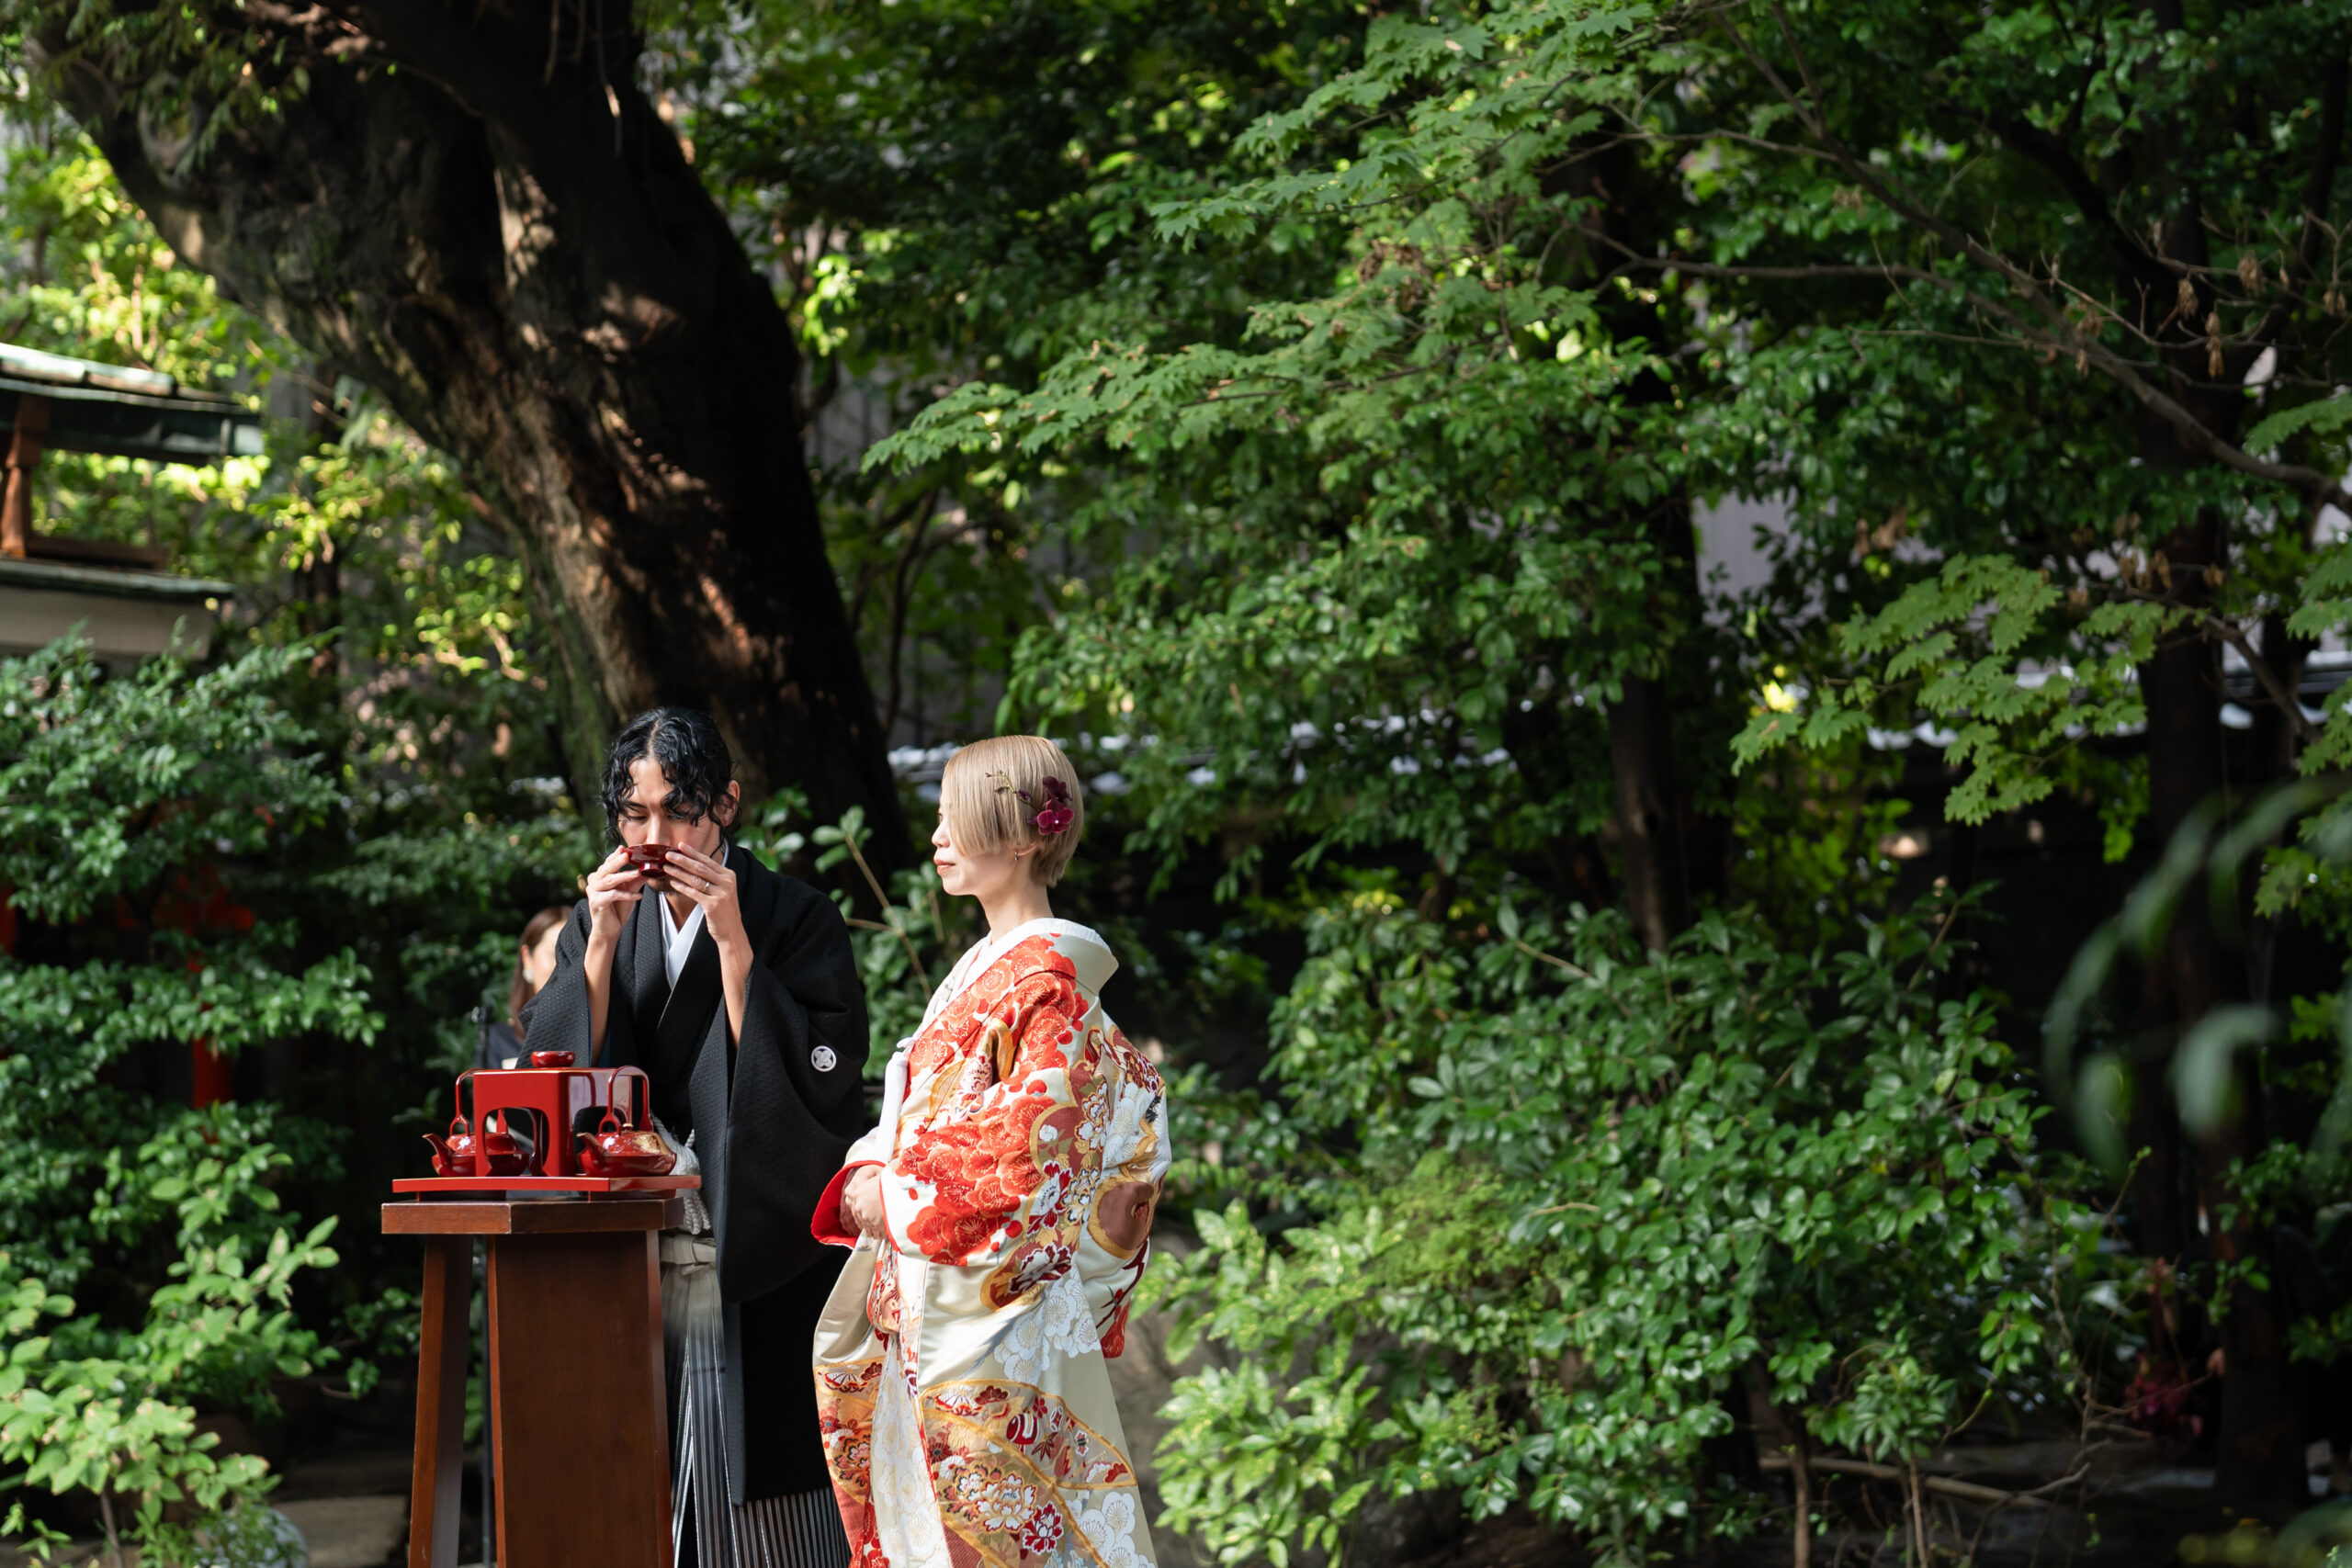 THE TREAT DRESSING 名古屋店の提携会場、料亭 河文での和装人前式では黒の紋付き袴と華やかな色打掛をお召日なり水合わせの儀を行います